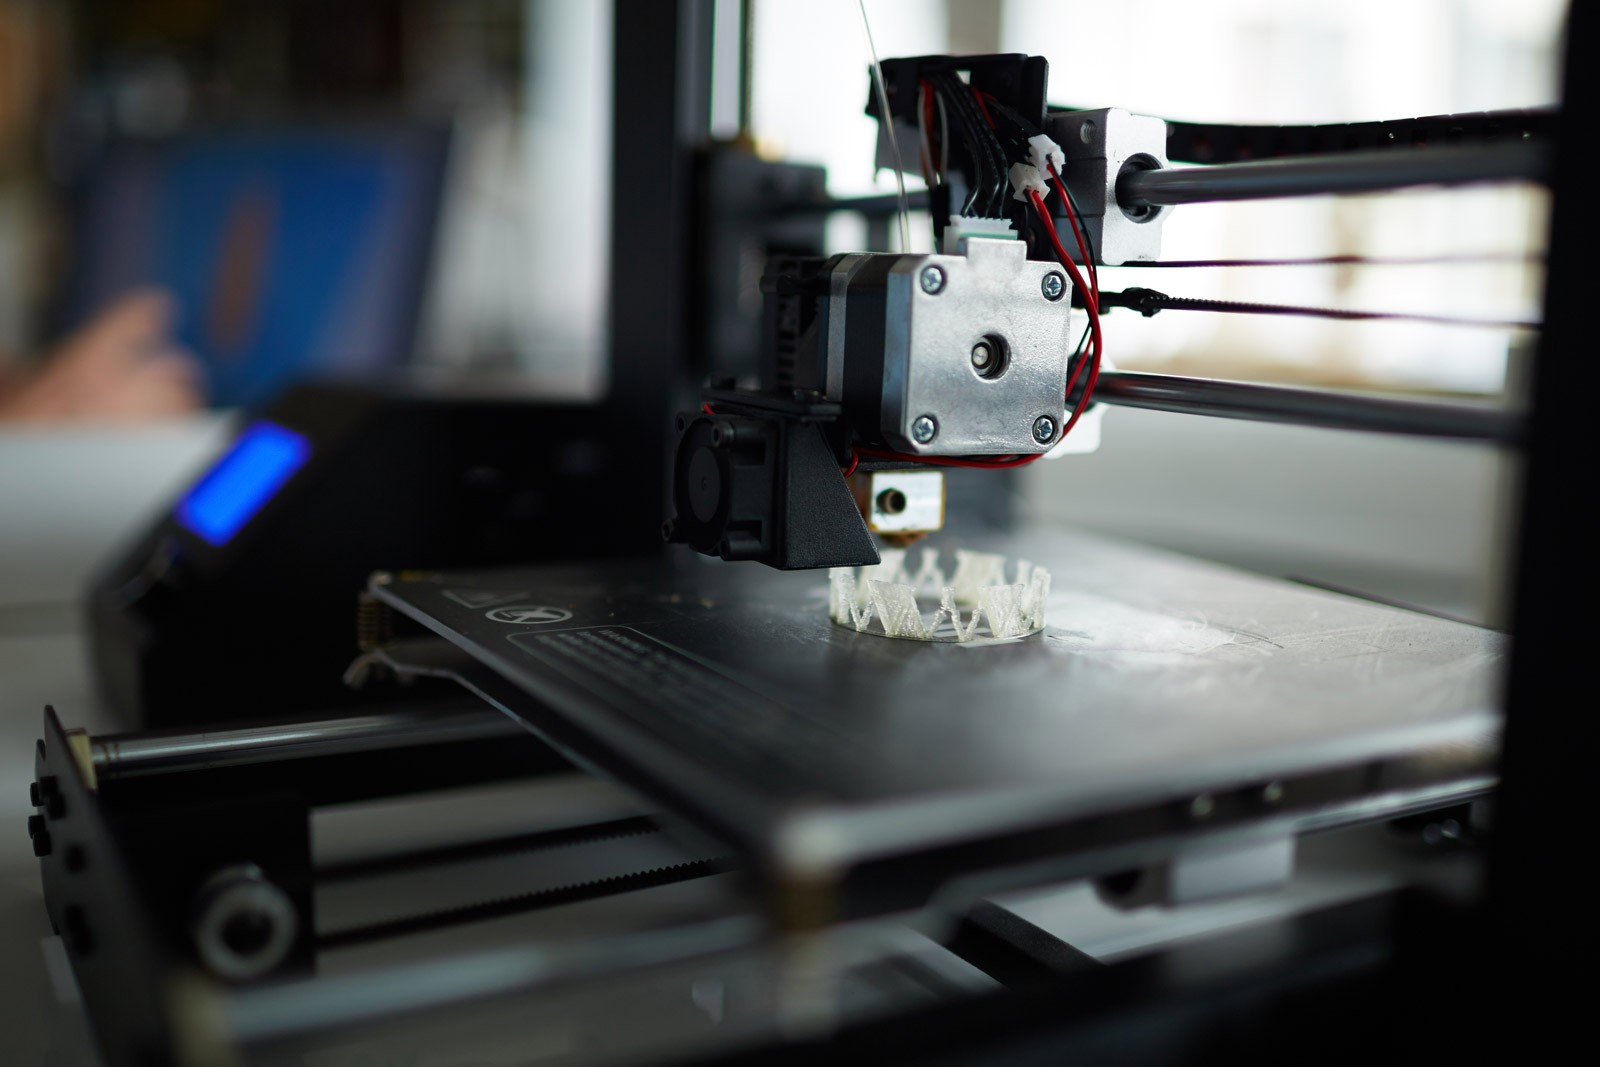 Втулки, крепеж и не только: что можно напечатать для машины на 3D-принтере печати, деталь, можно, которые, достаточно, 3Dпринтер, детали, напечатать, уплотнитель, новые, автомобиля, деньги, некоторых, пластиковая, только, весьма, размеры, пластиковые, временем, придется